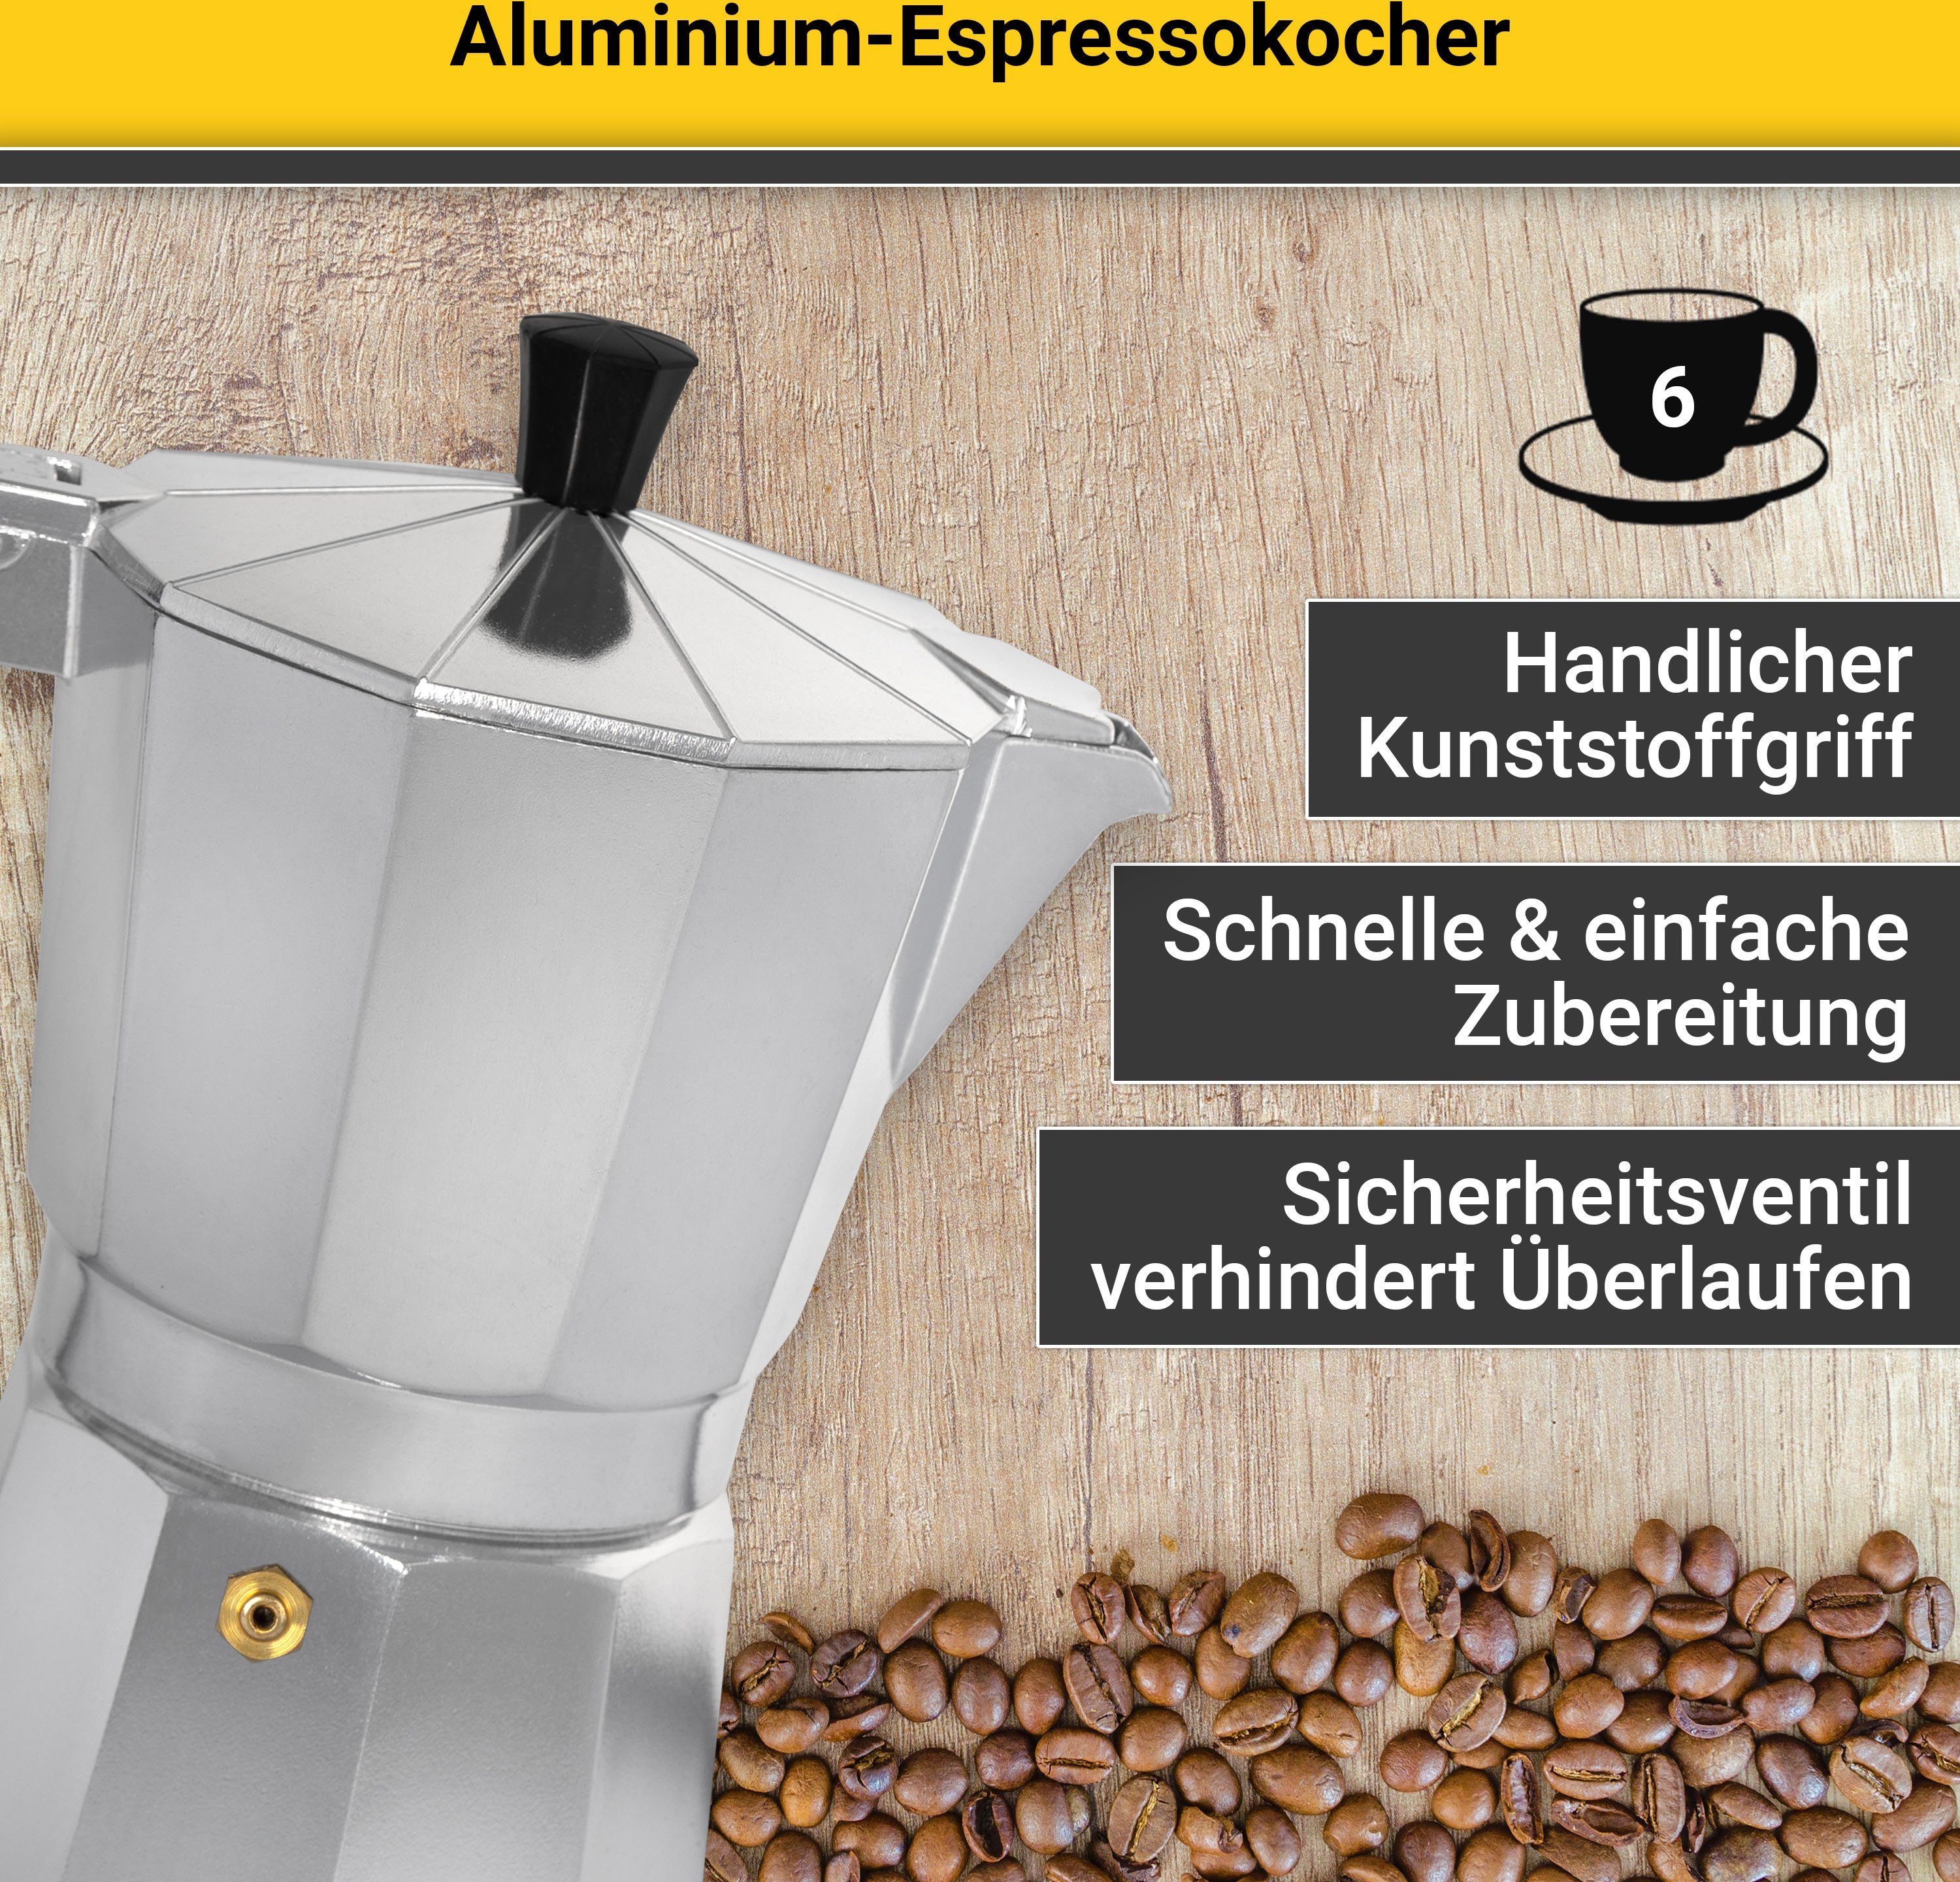 Krüger Druckbrüh-Kaffeemaschine 502, Tassen Aluminium, für Form 6 in eckige Kaffeebereiter für 6 traditioneller Tassen